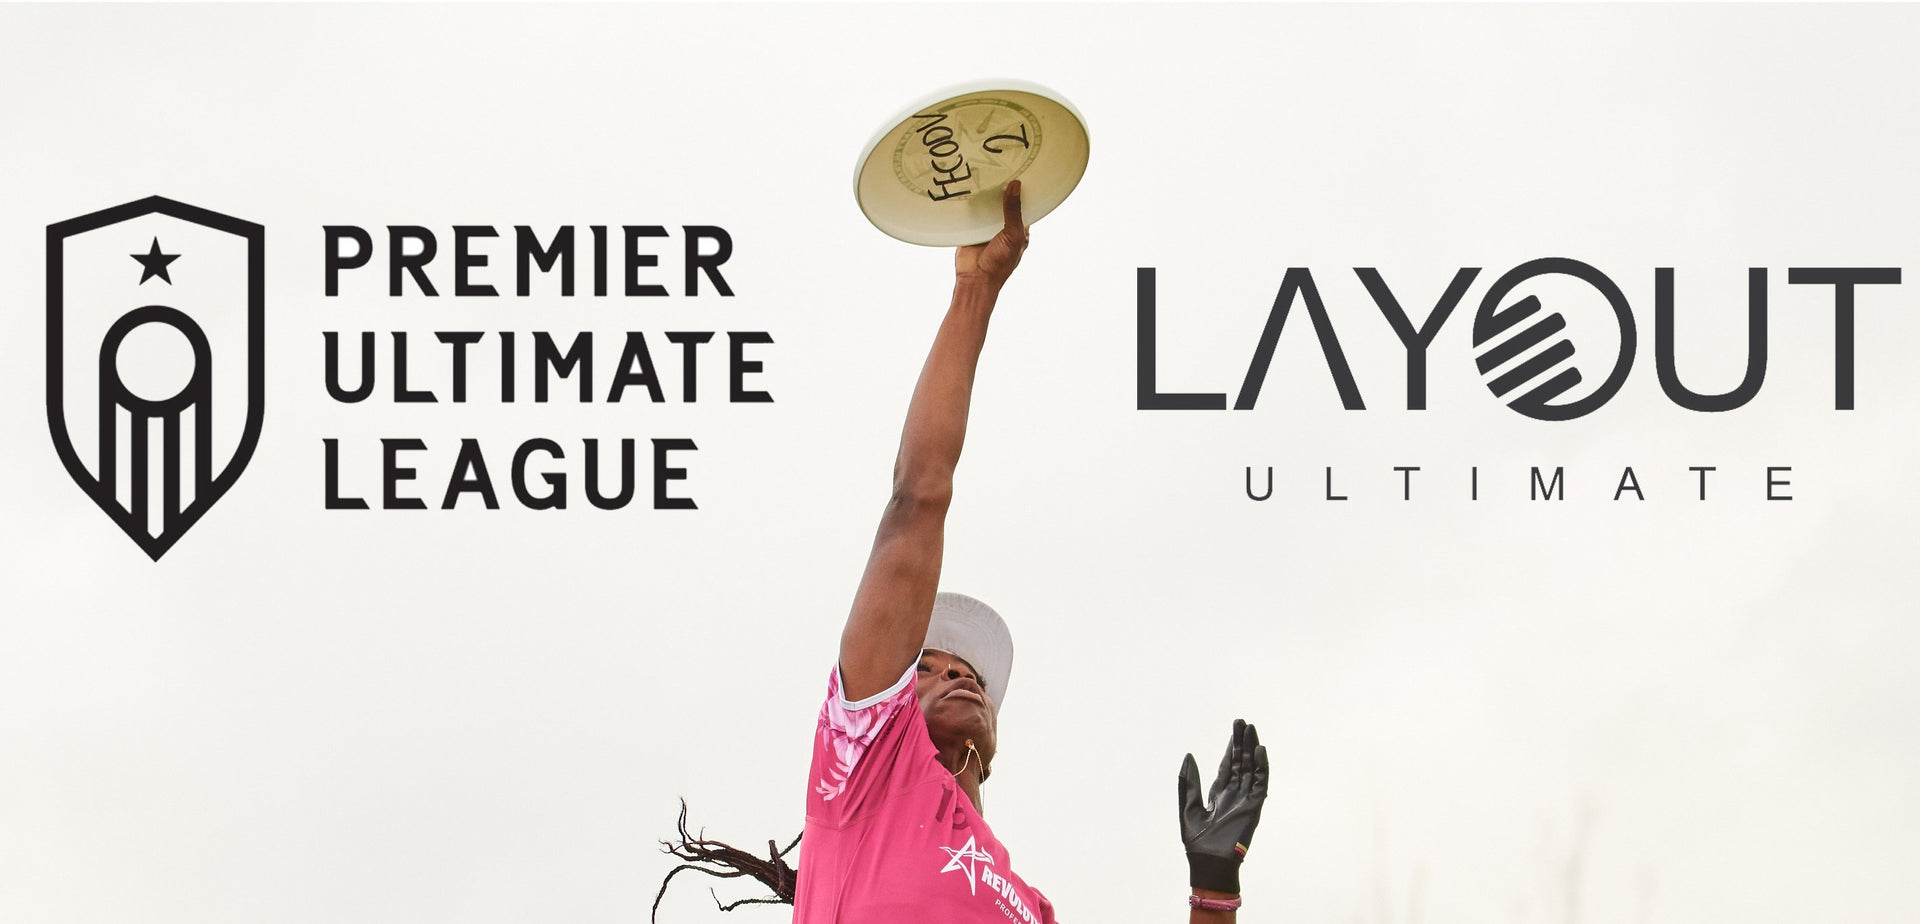 Partner Announcement: Premier Ultimate League (PUL) - Layout Ultimate